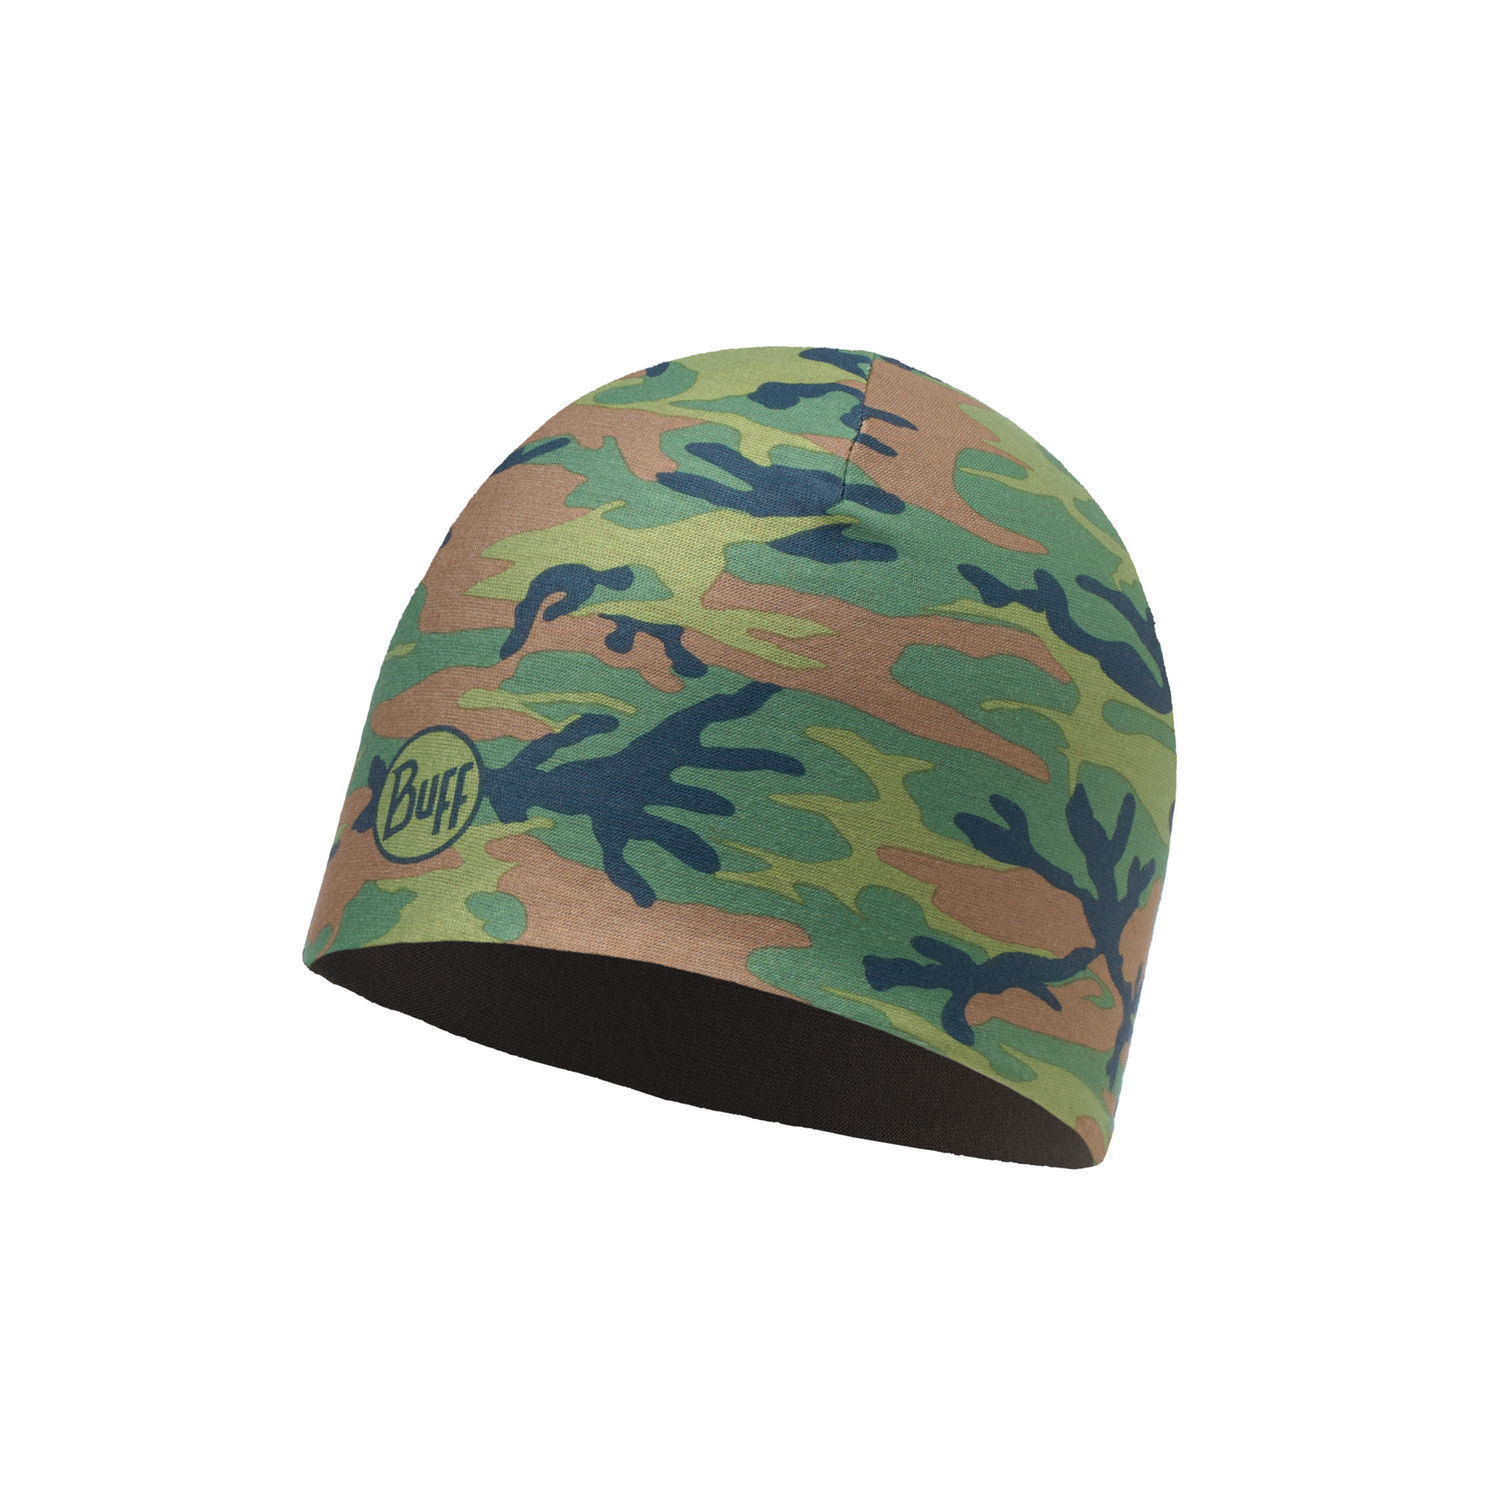 BUFF - Microfiber reversible hat